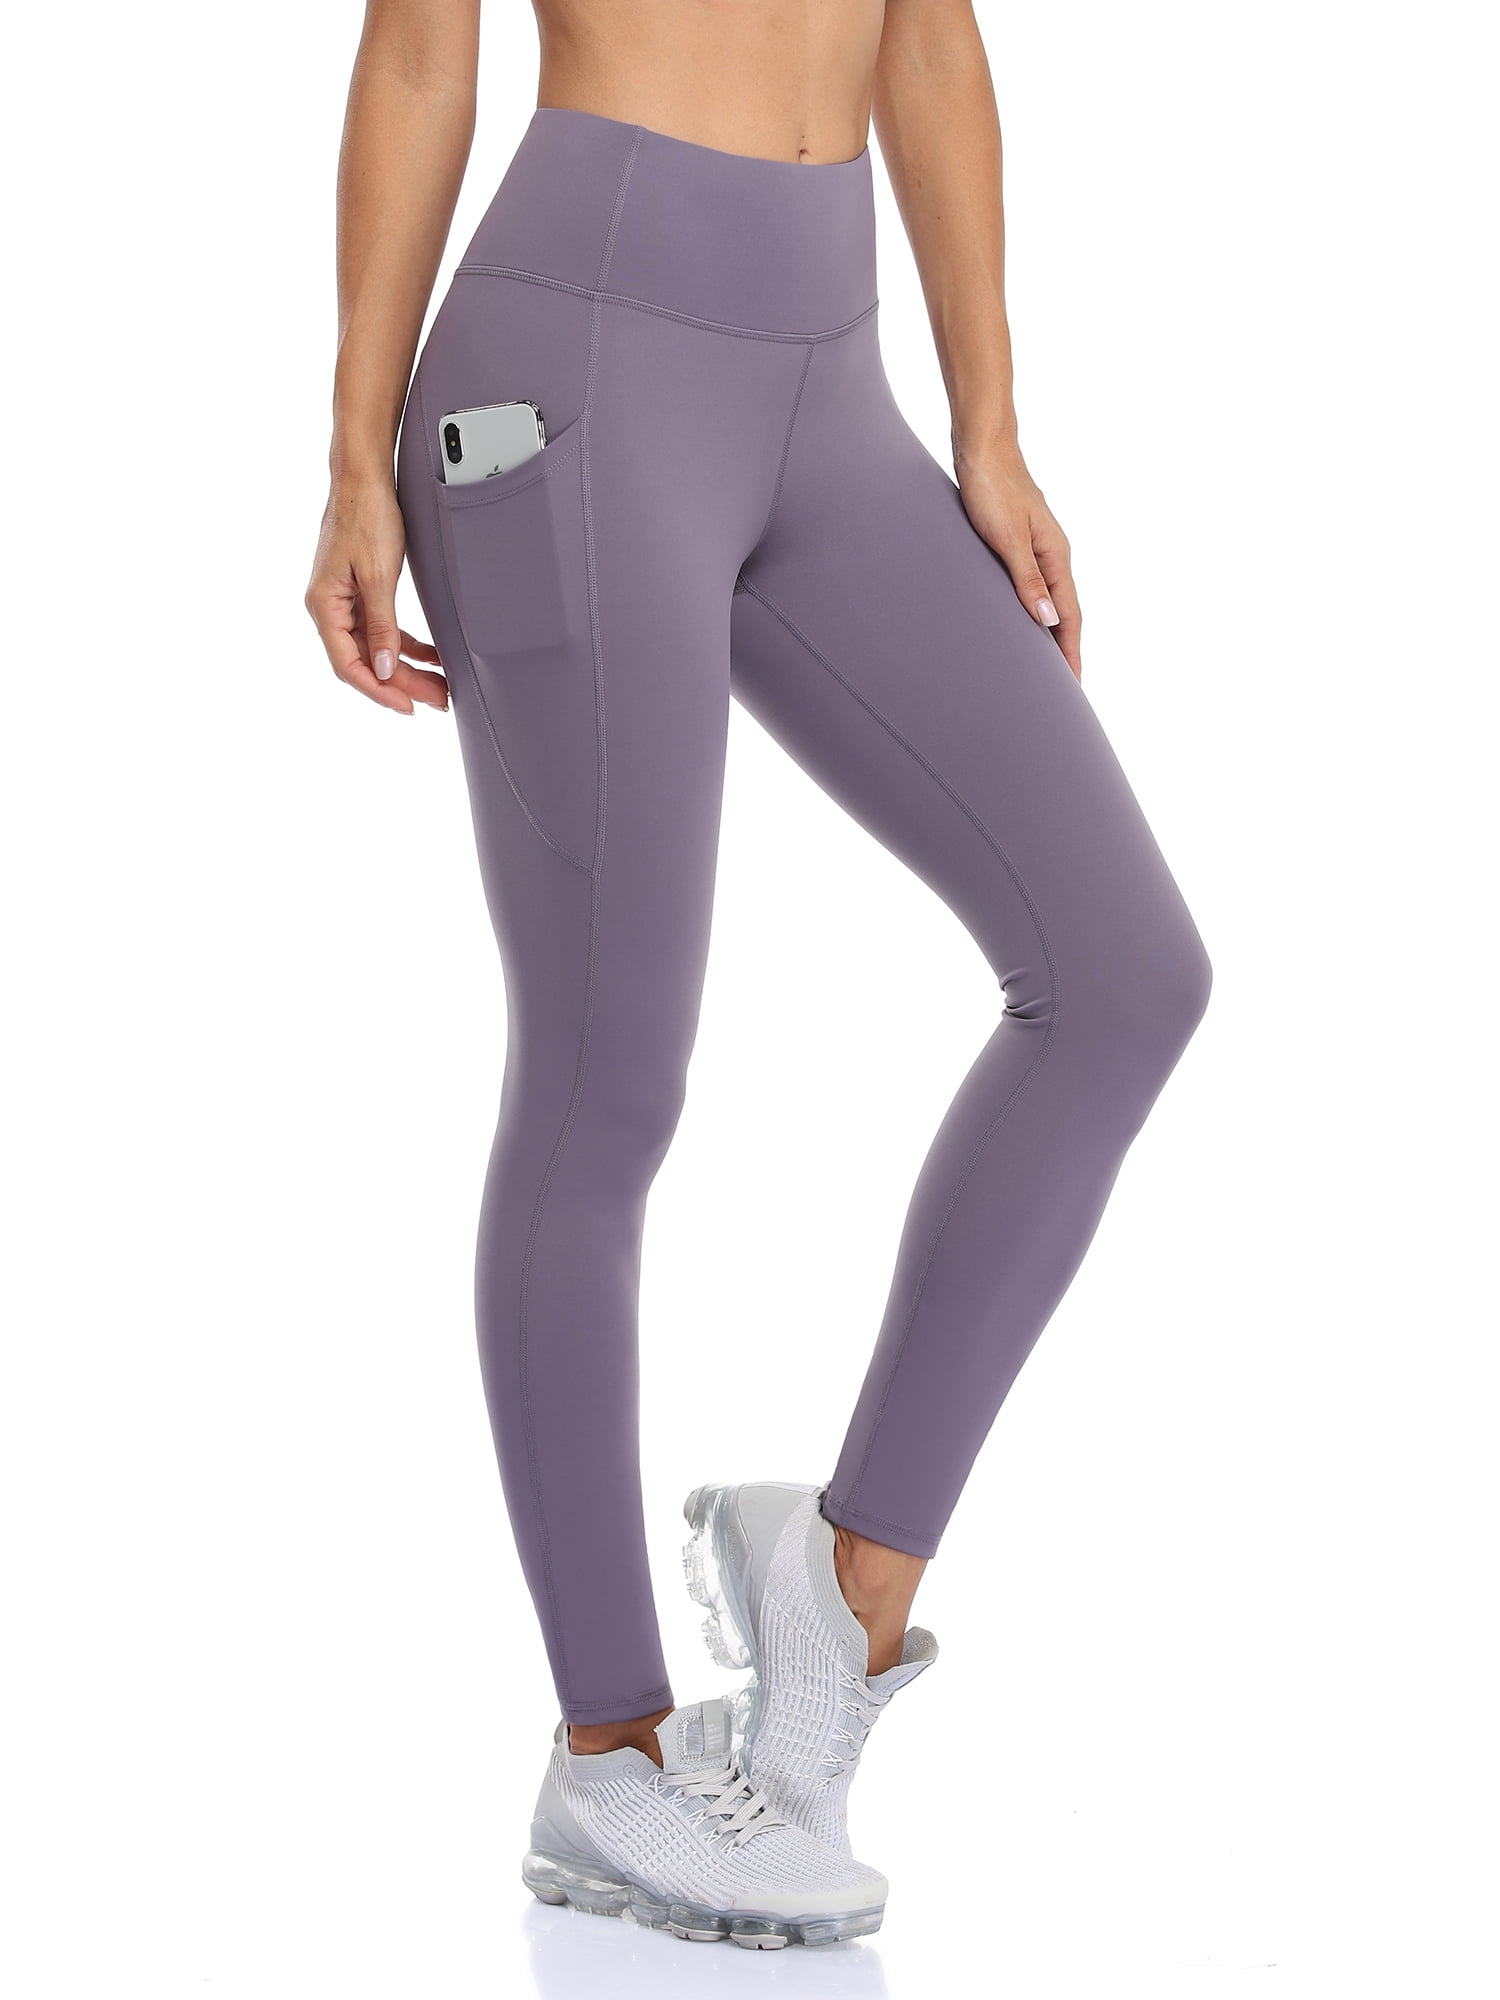 Gymclick Pockets Leggings High Waist Yoga Pants Women Buttery Soft